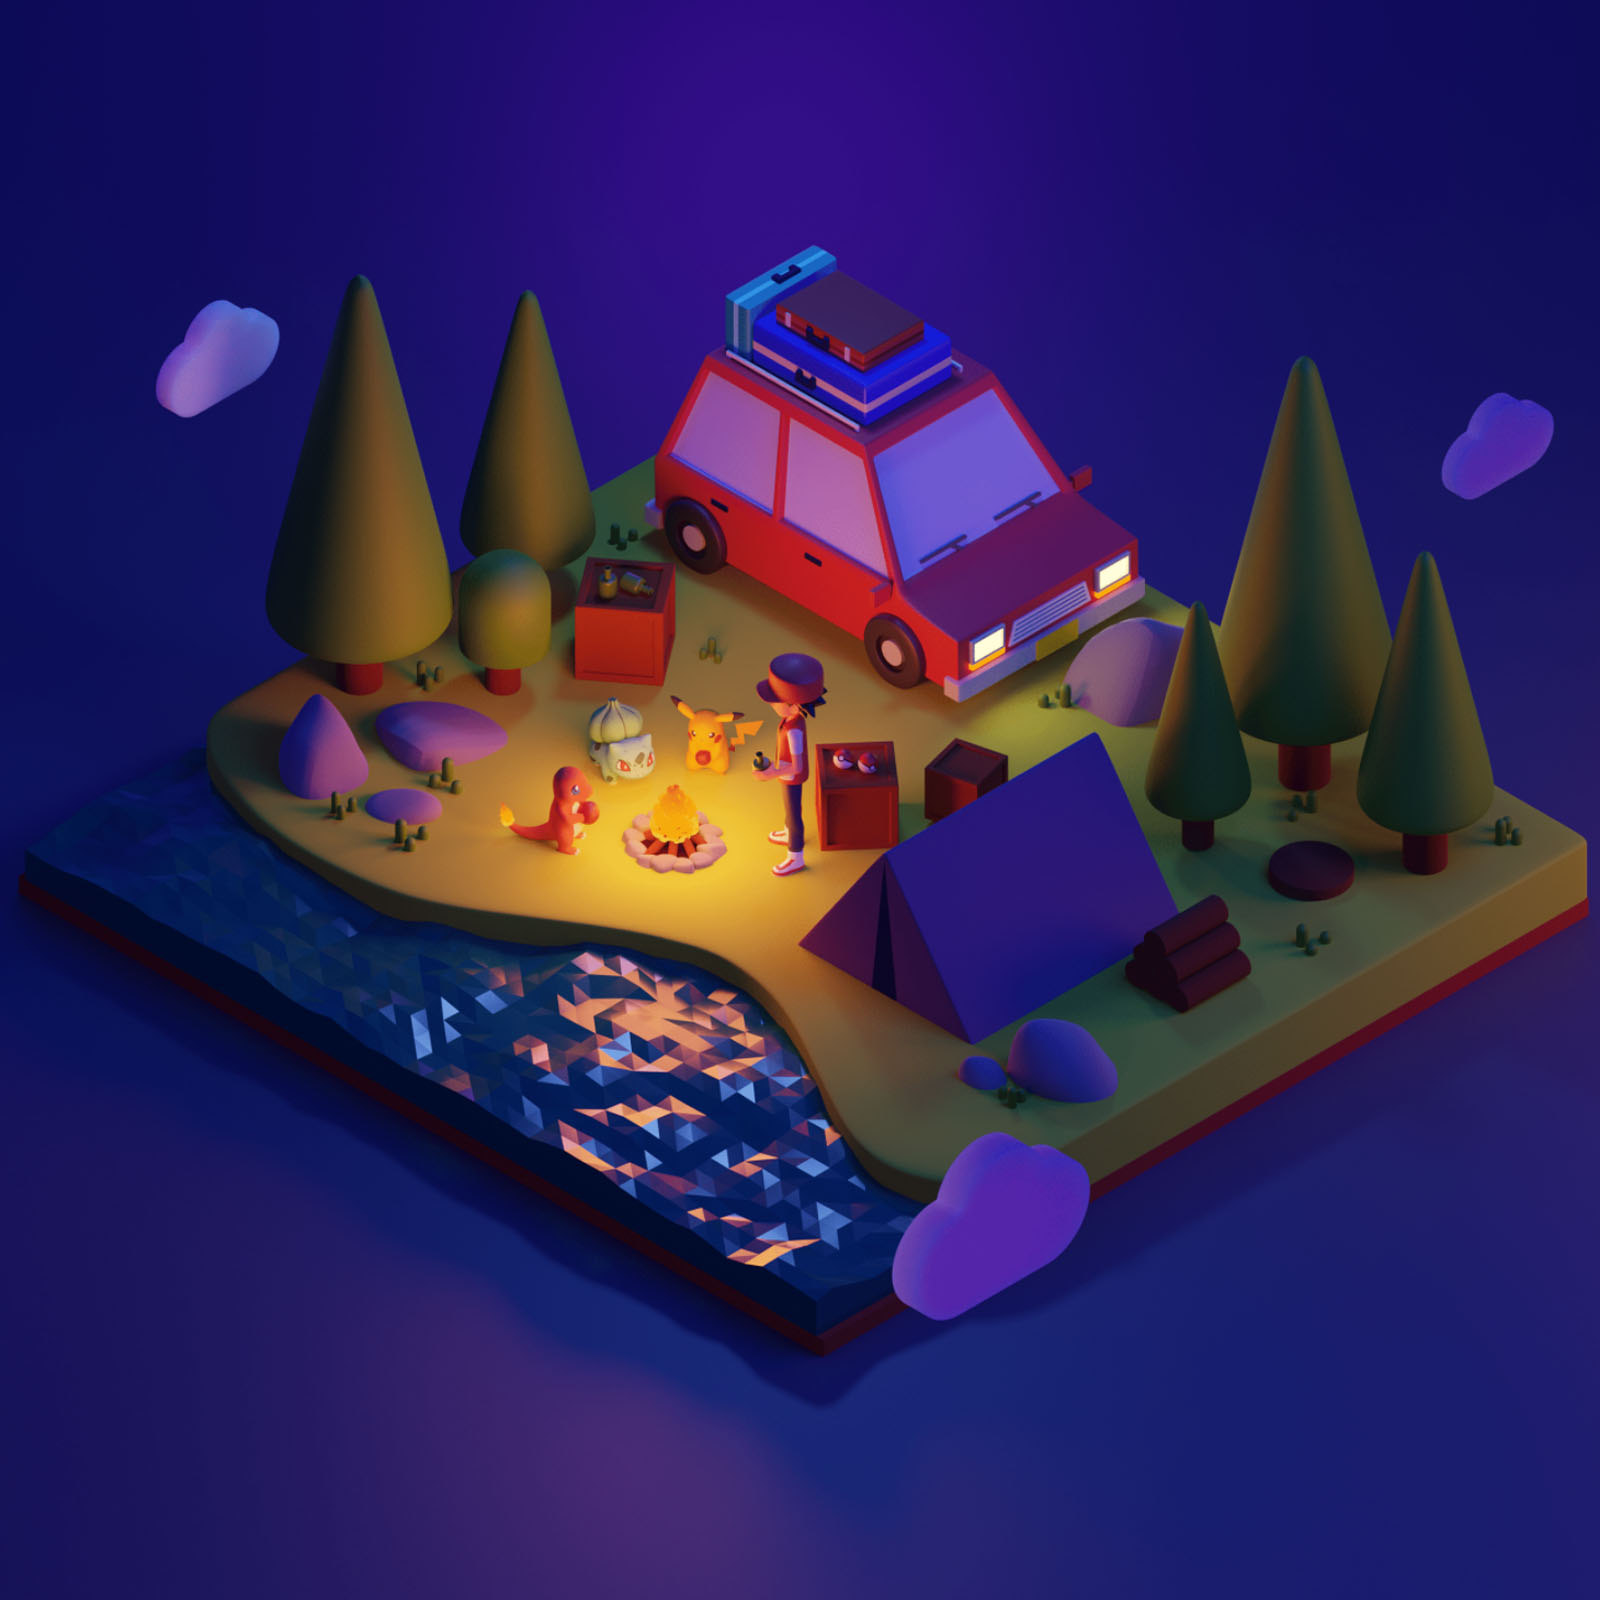 Pokmon inspired 3D Illustrations in Blender 3D